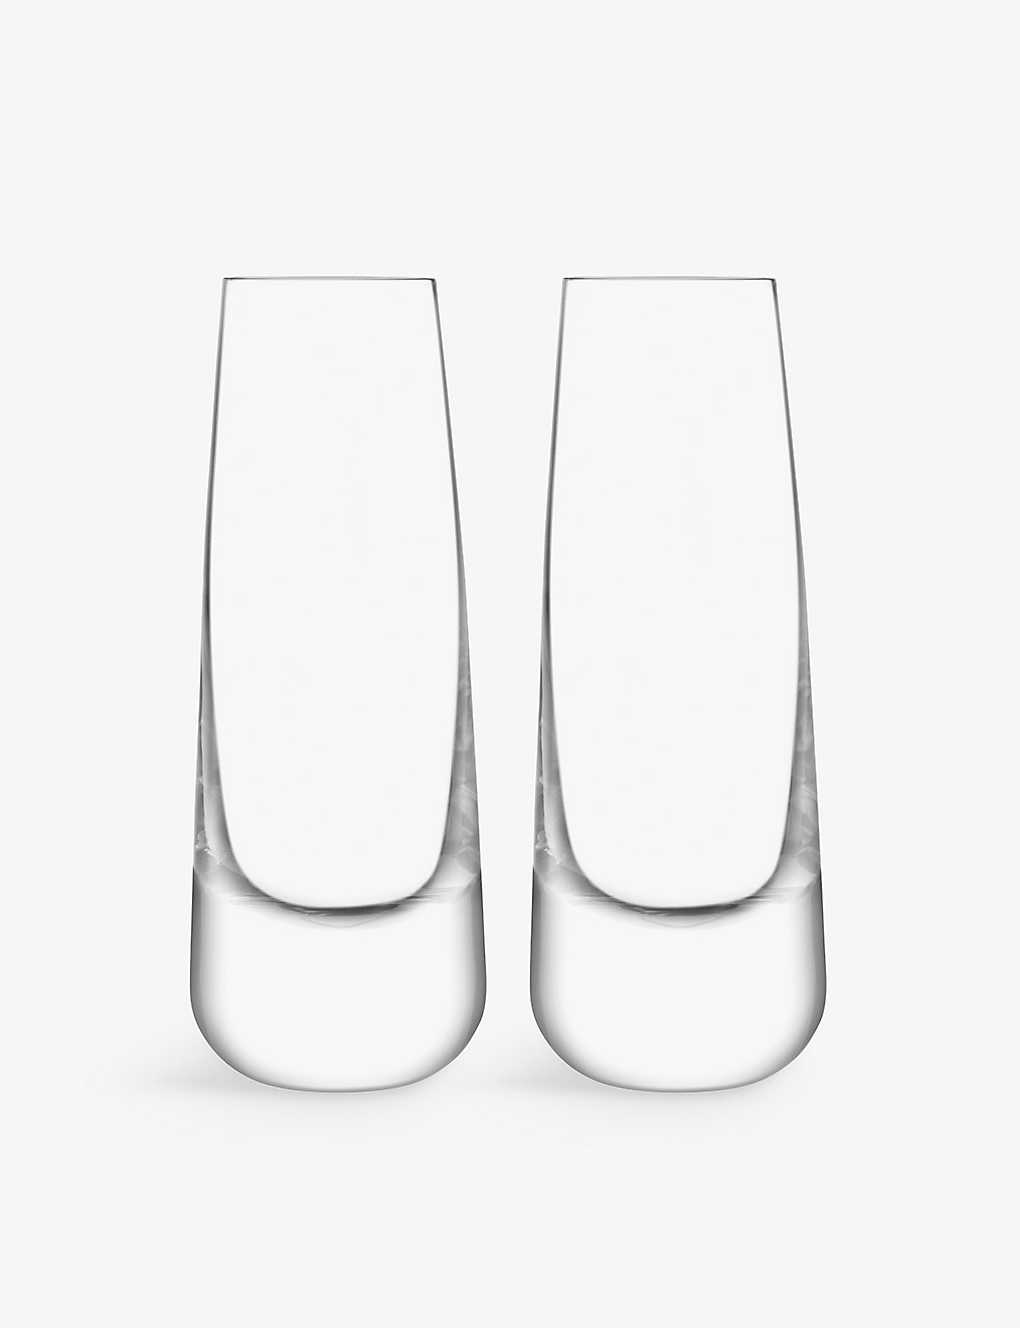 Lsa Bar Culture Glasses Set Of Two